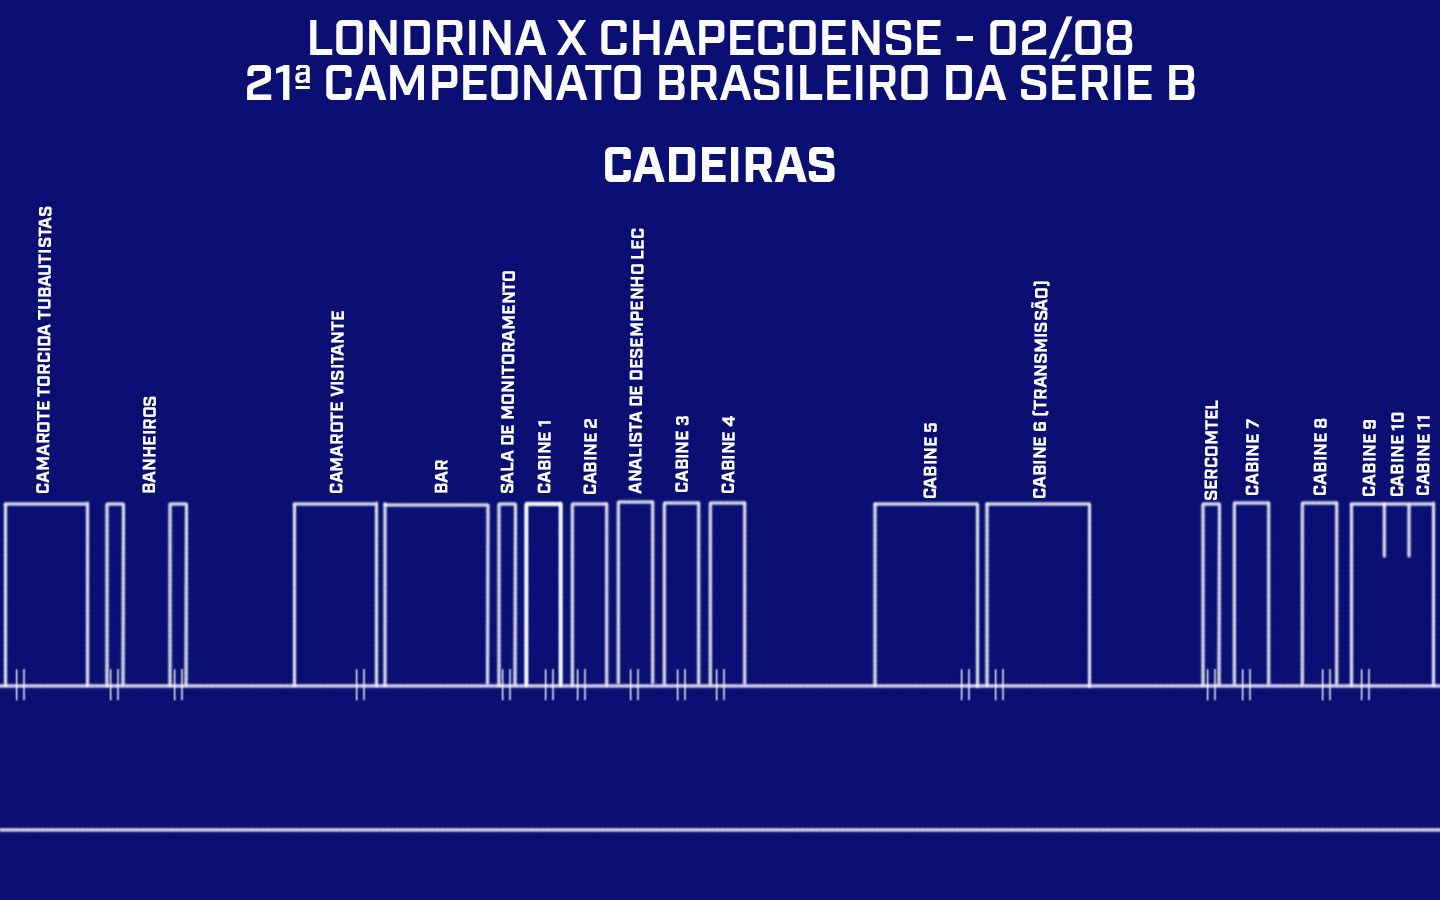 Credenciamento do Estádio do Café | Londrina x Chapecoense - 21ª rodada do Campeonato Brasileiro da Série B